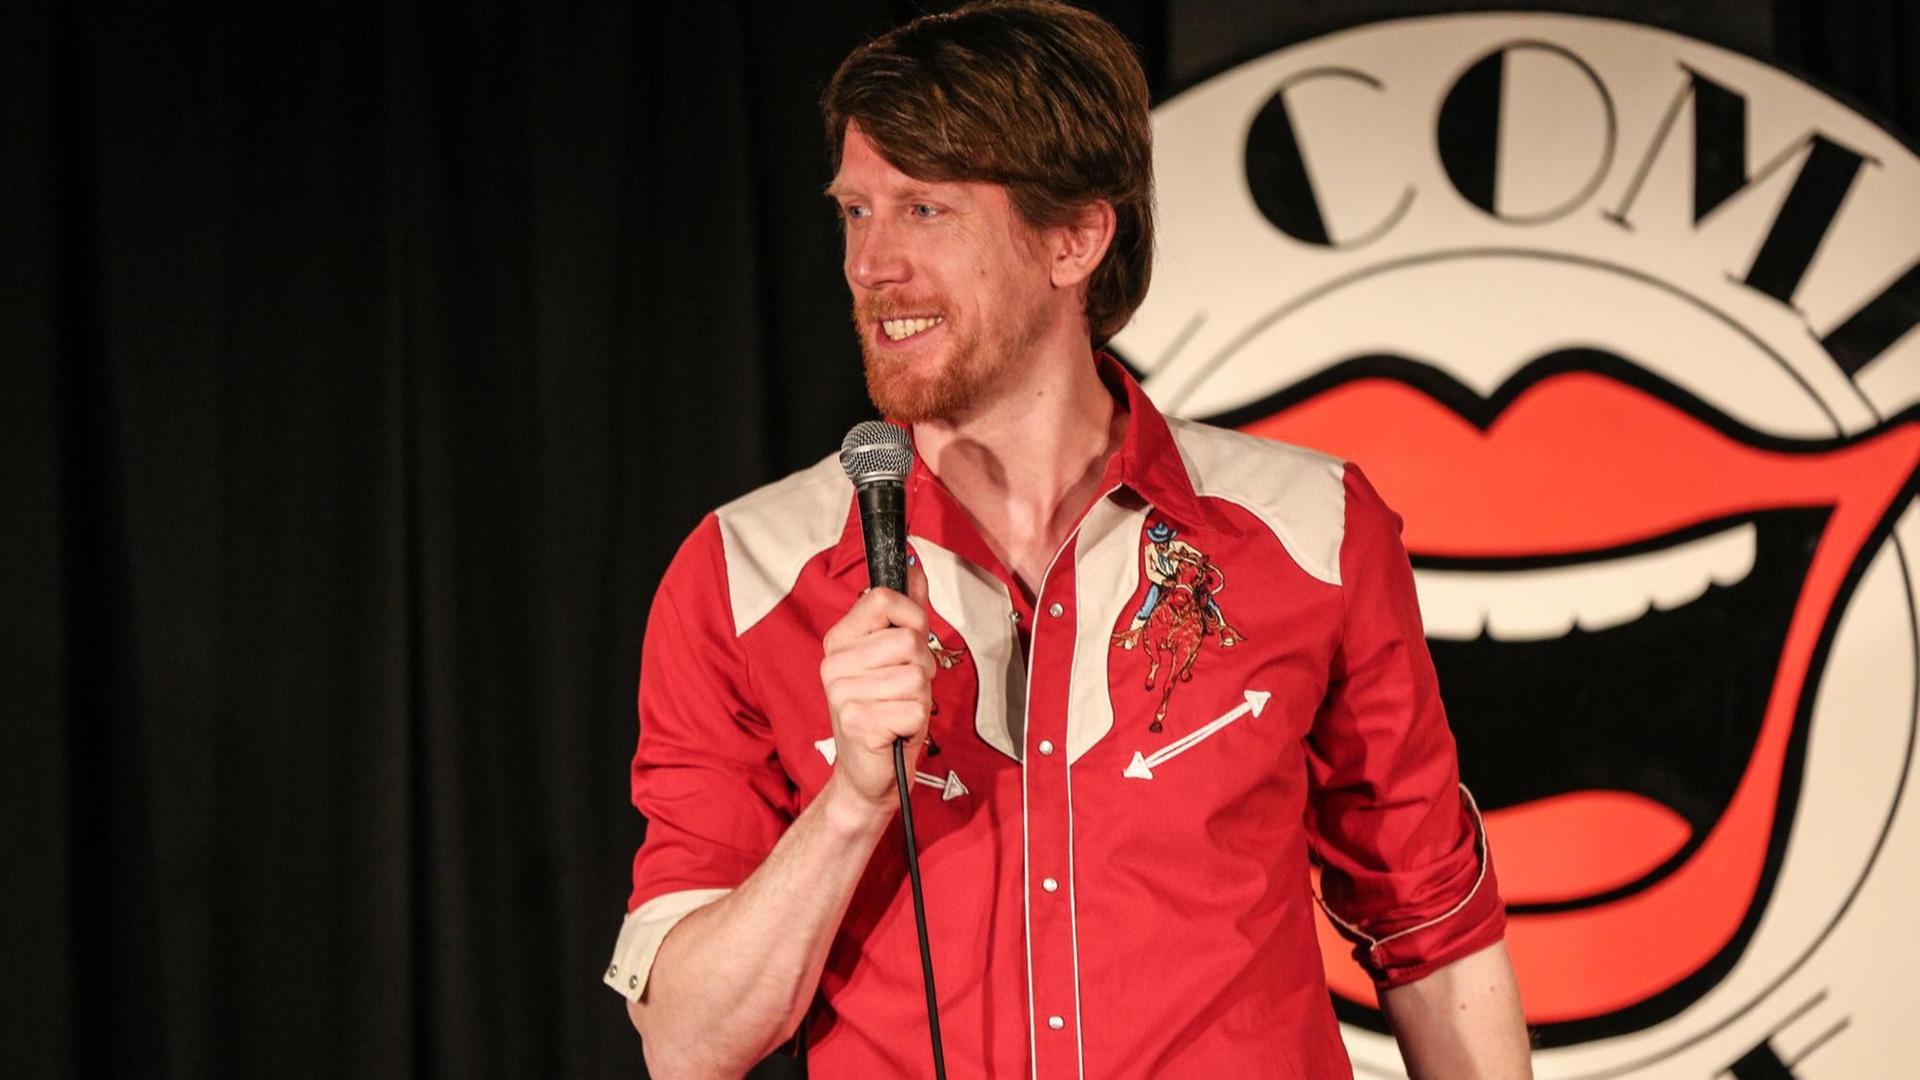 Der Komiker Christian Schulte Loh auf einer Bühne vor dem Logo des renommierten Londoner "Comedy Store"